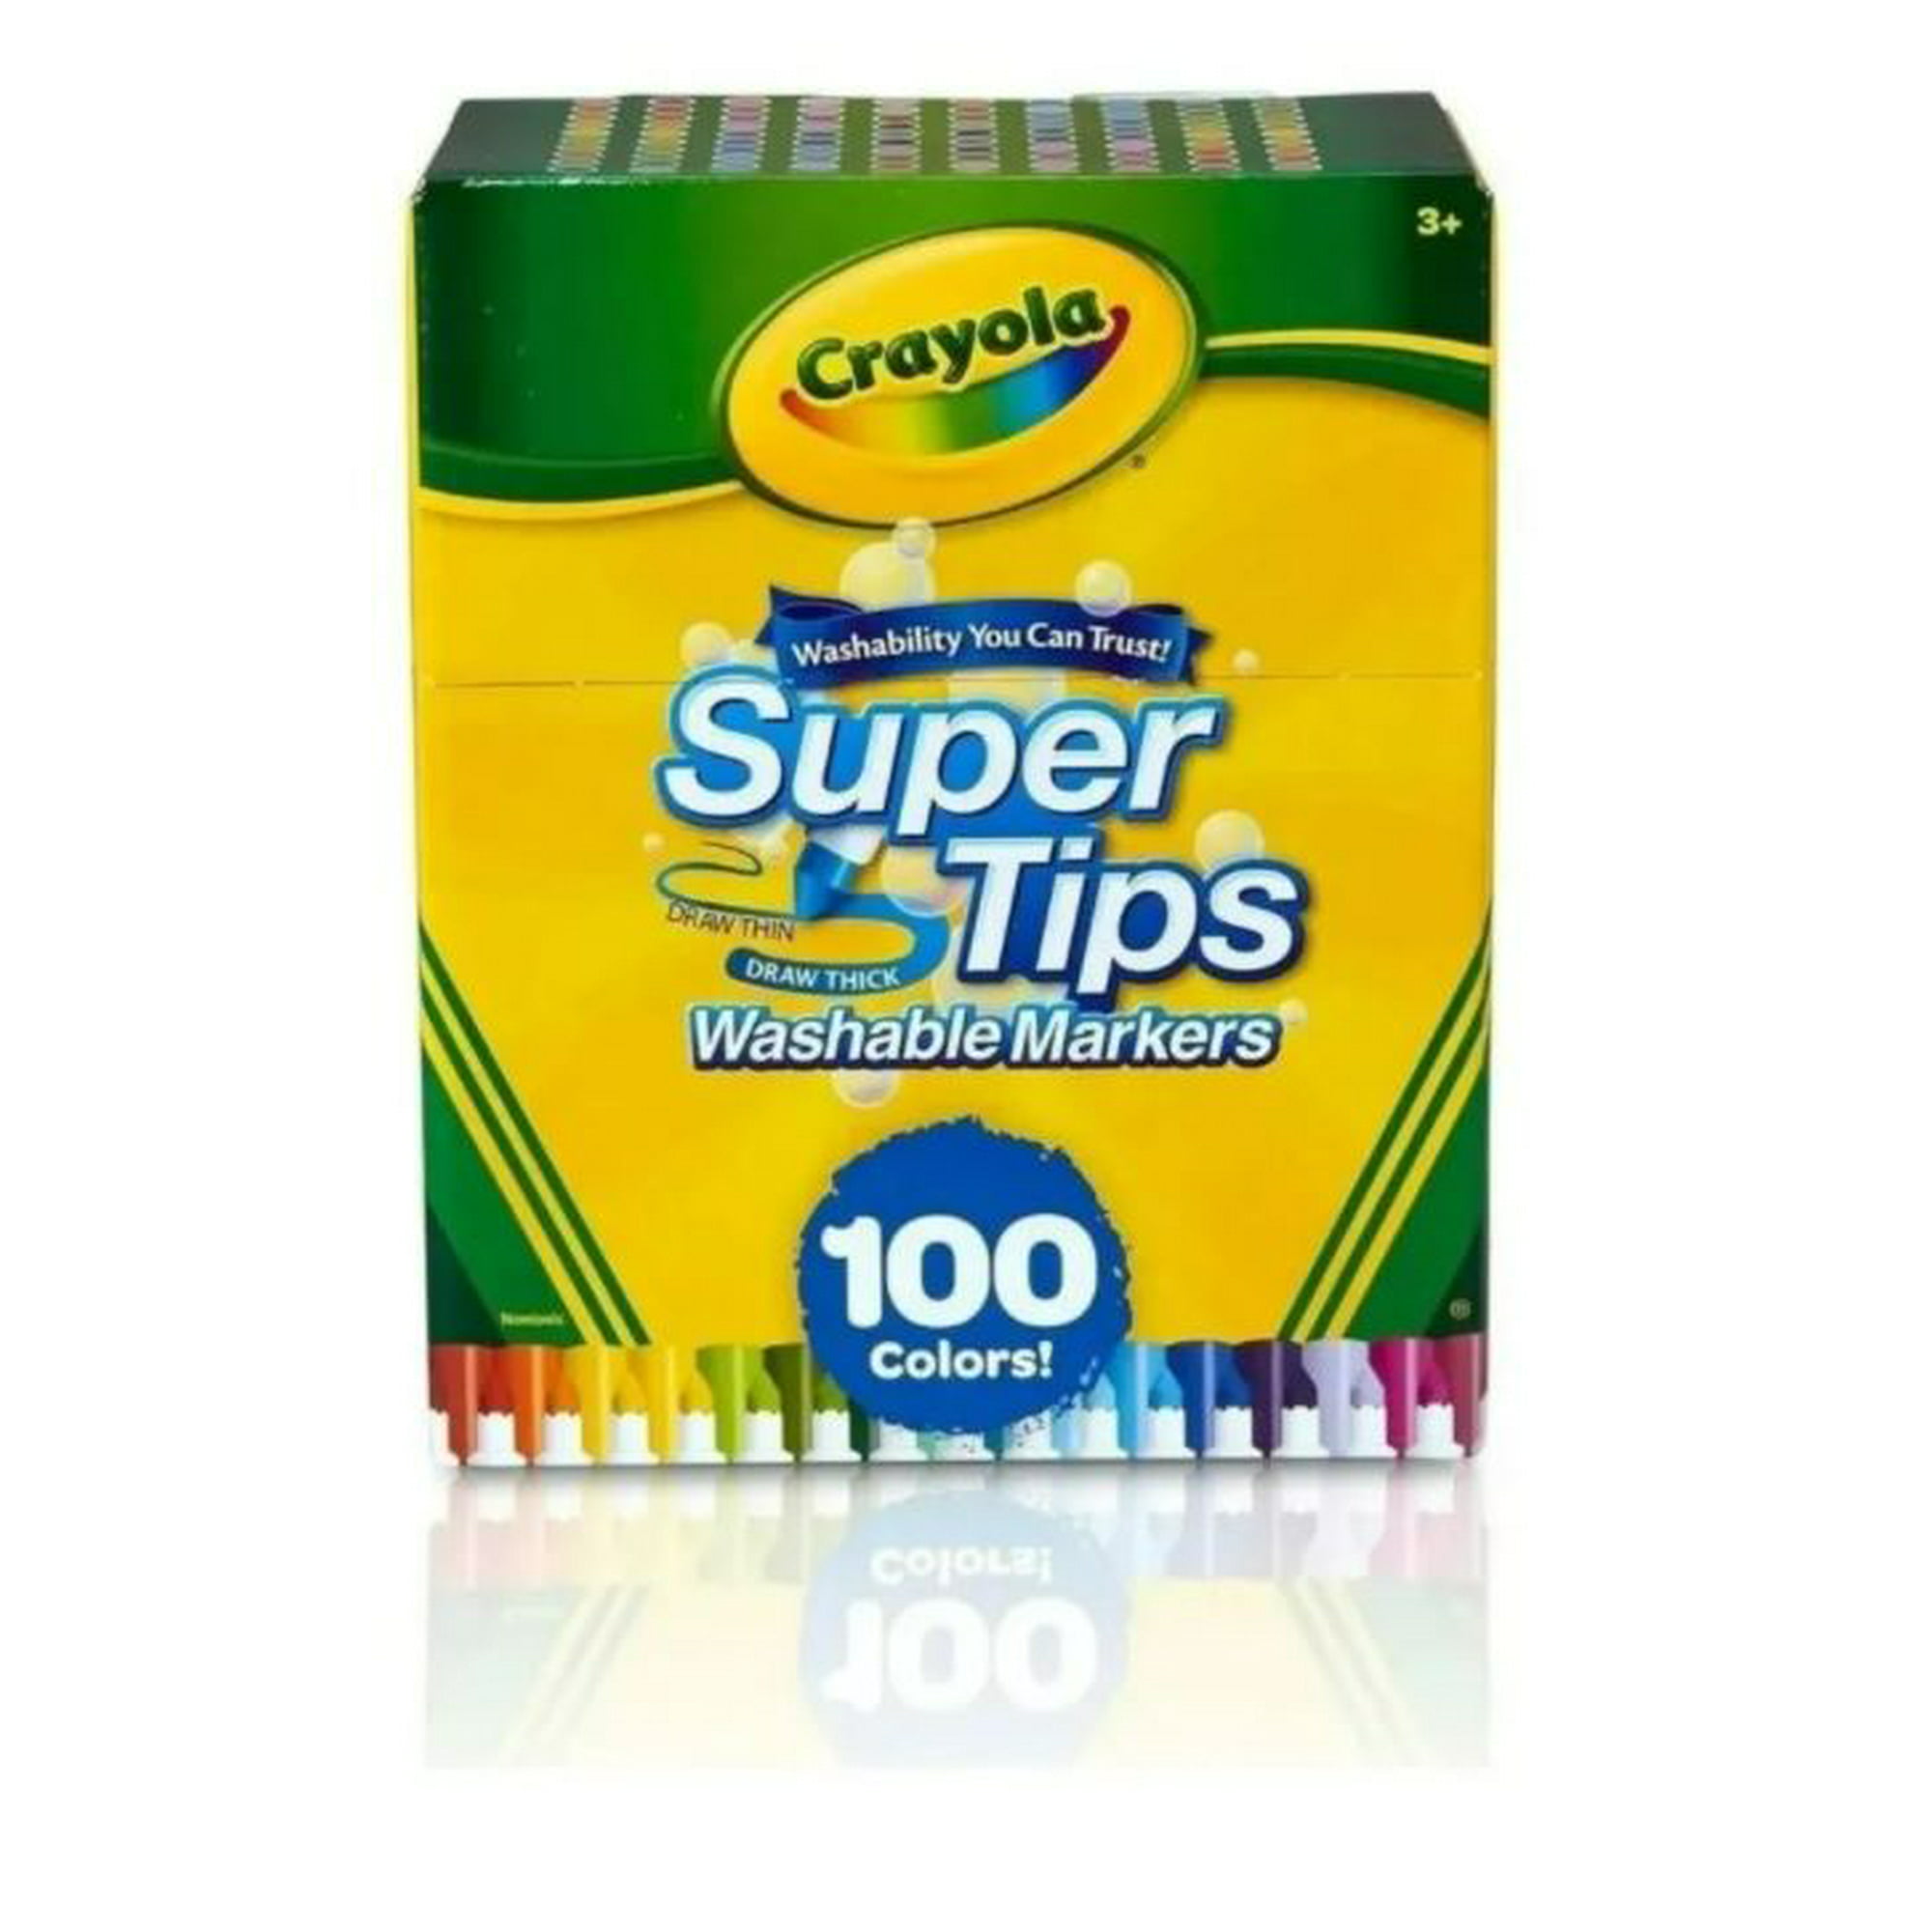 Plumones Super Tips Crayola 100 Piezas Crayola Super Tips 100